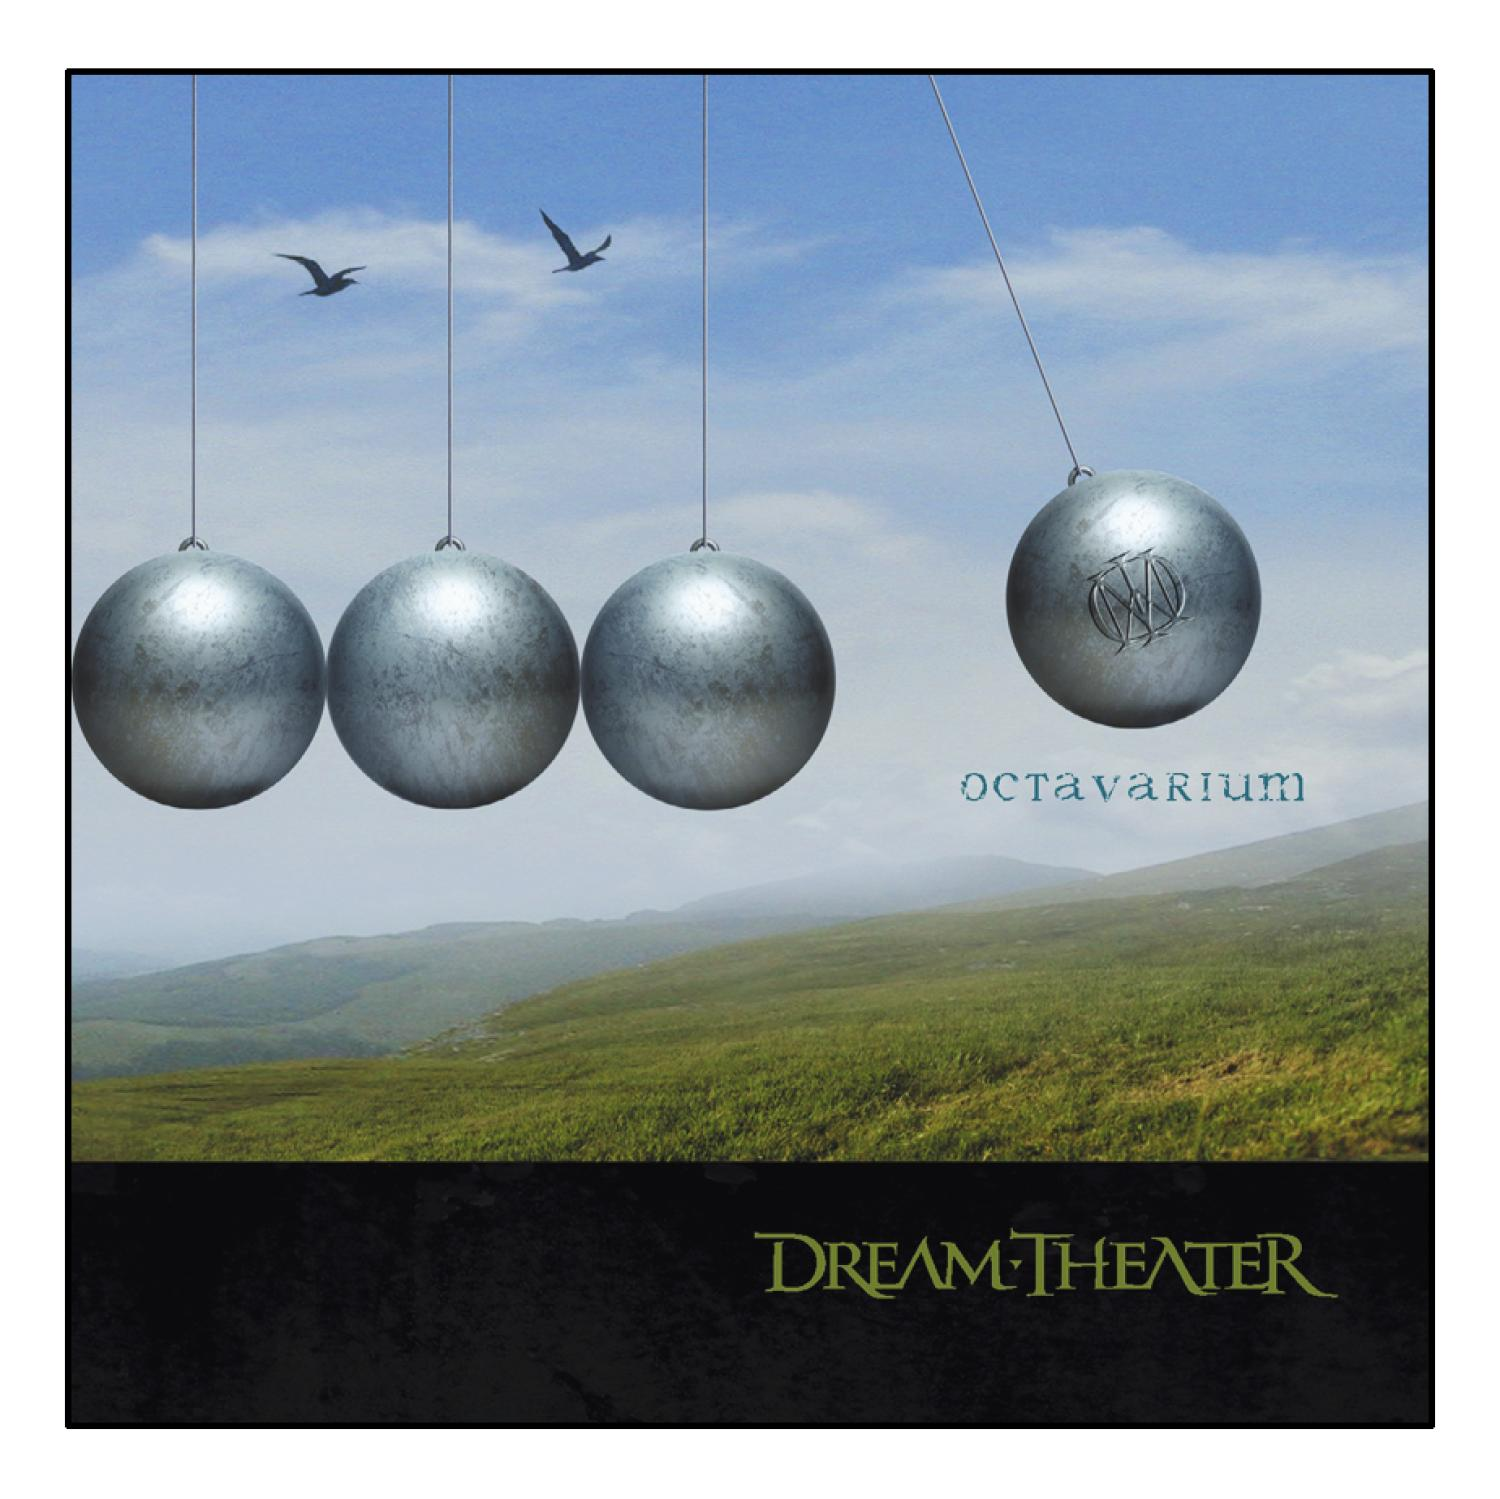 Dream Octavarium - (CD) Theater -